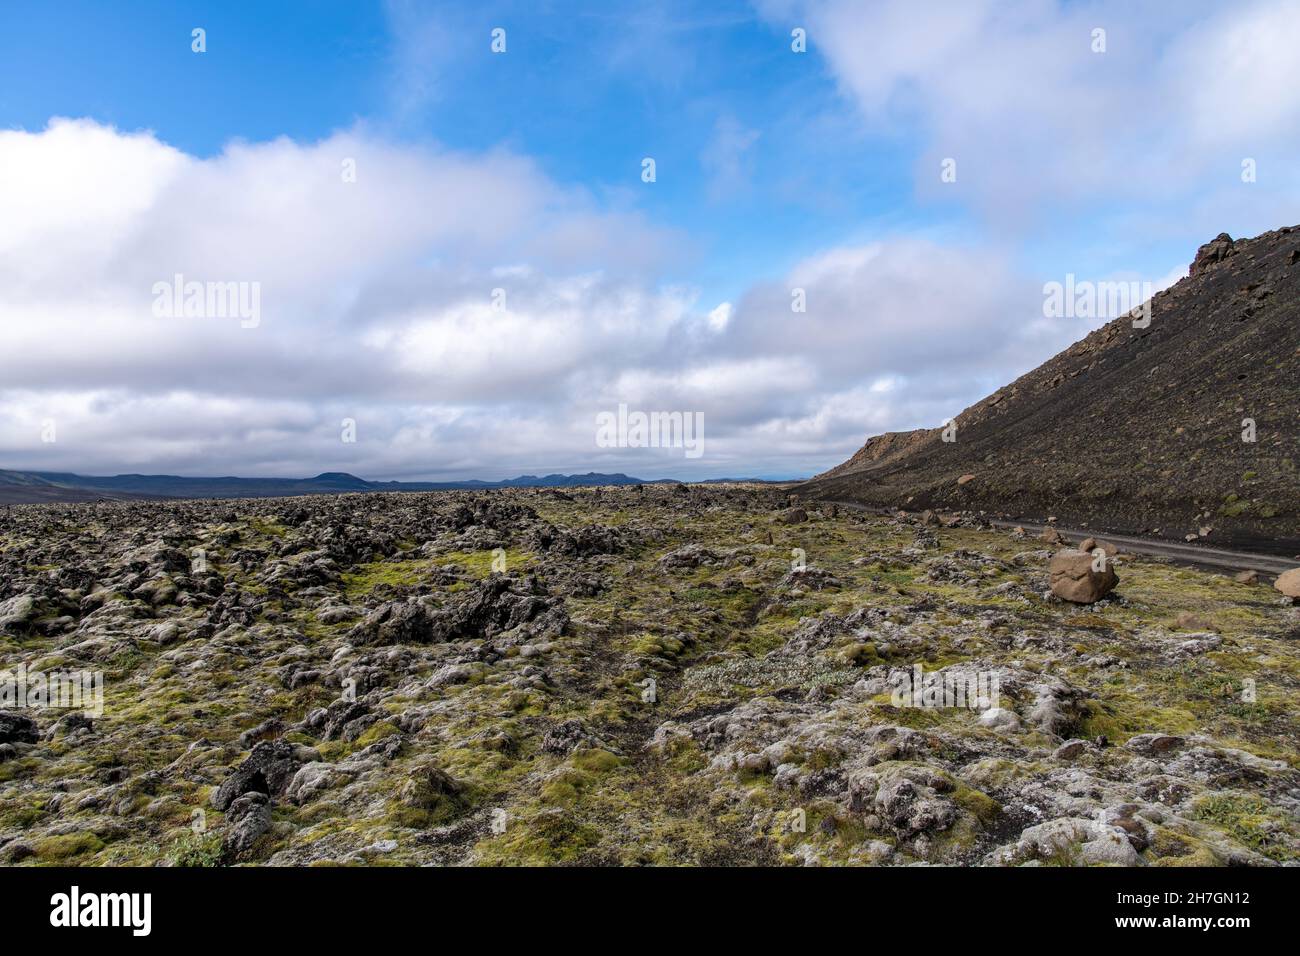 Vista ad angolo basso del paesaggio arido di roccia lavica nera, alcune ricoperte di muschio, dal vicino vulcano Katla sull'Islanda con montagne sul retro Foto Stock